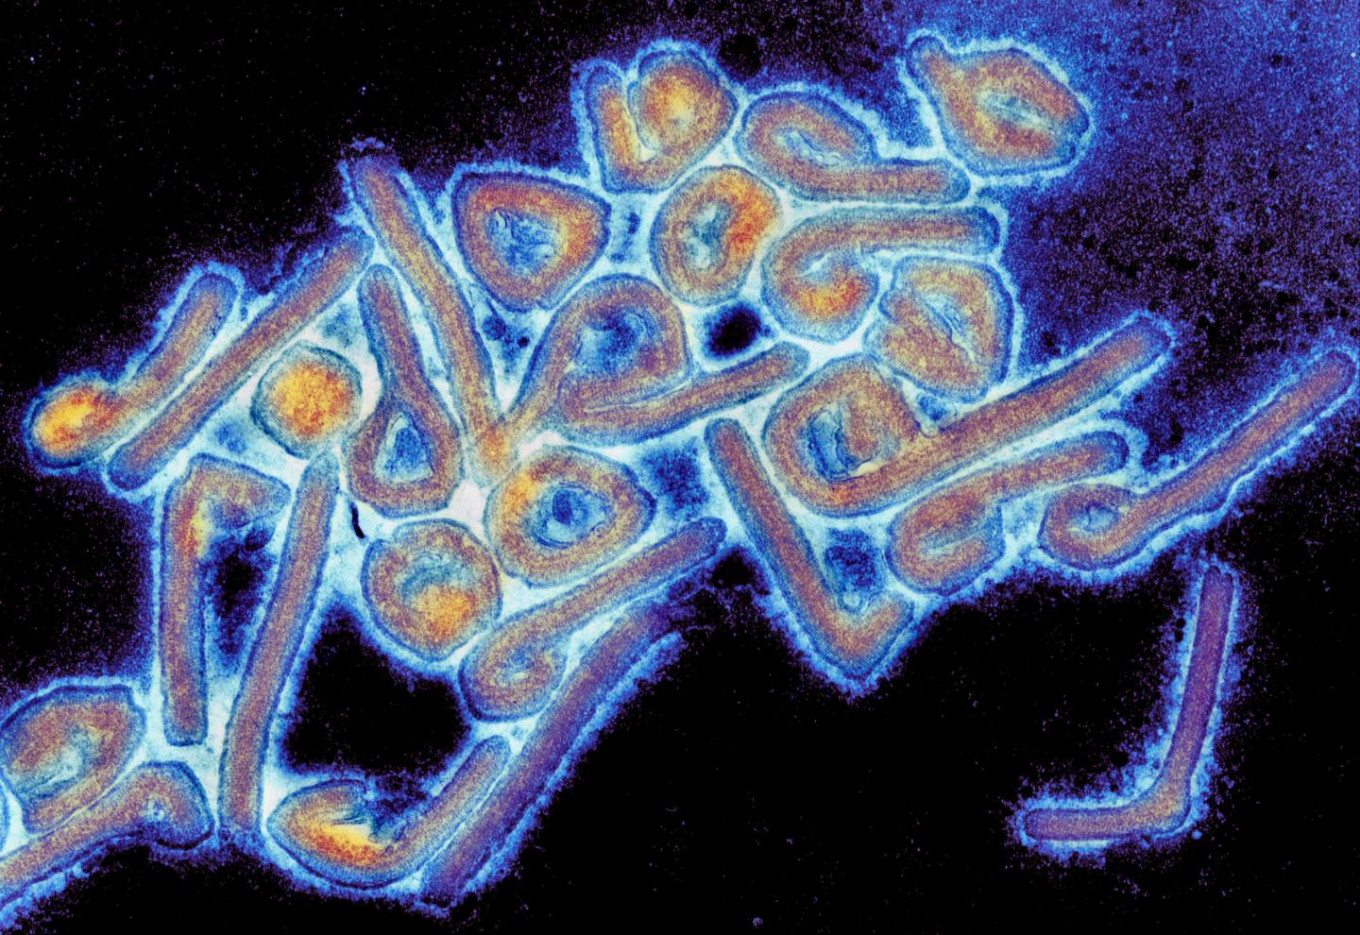 Indonesia on alert amid increase of Marburg virus disease outbreak